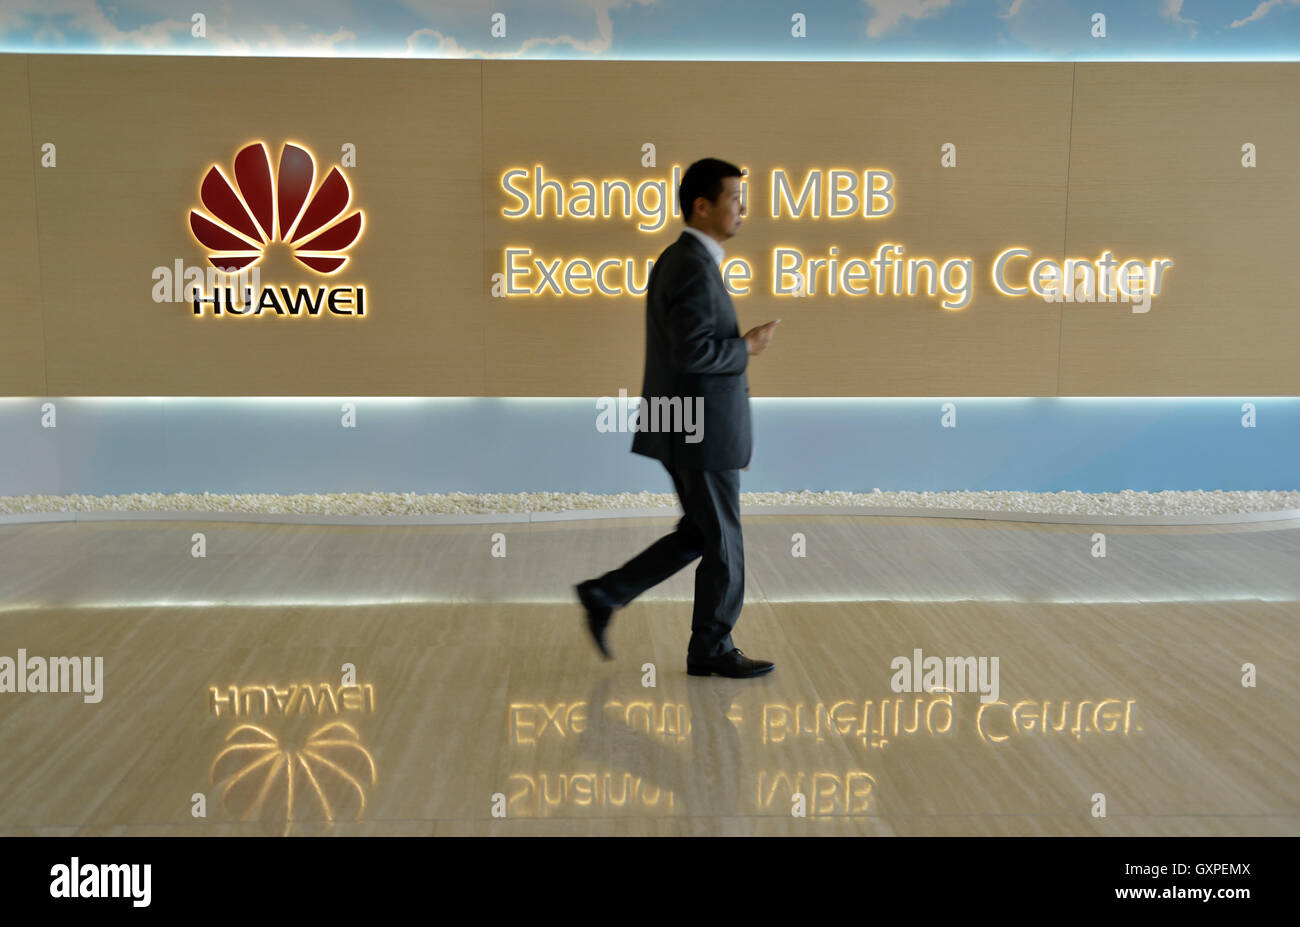 Huawei Shanghai MBB Executive Briefing Center, à Shanghai, Chine. 10-Sep-2016 Banque D'Images